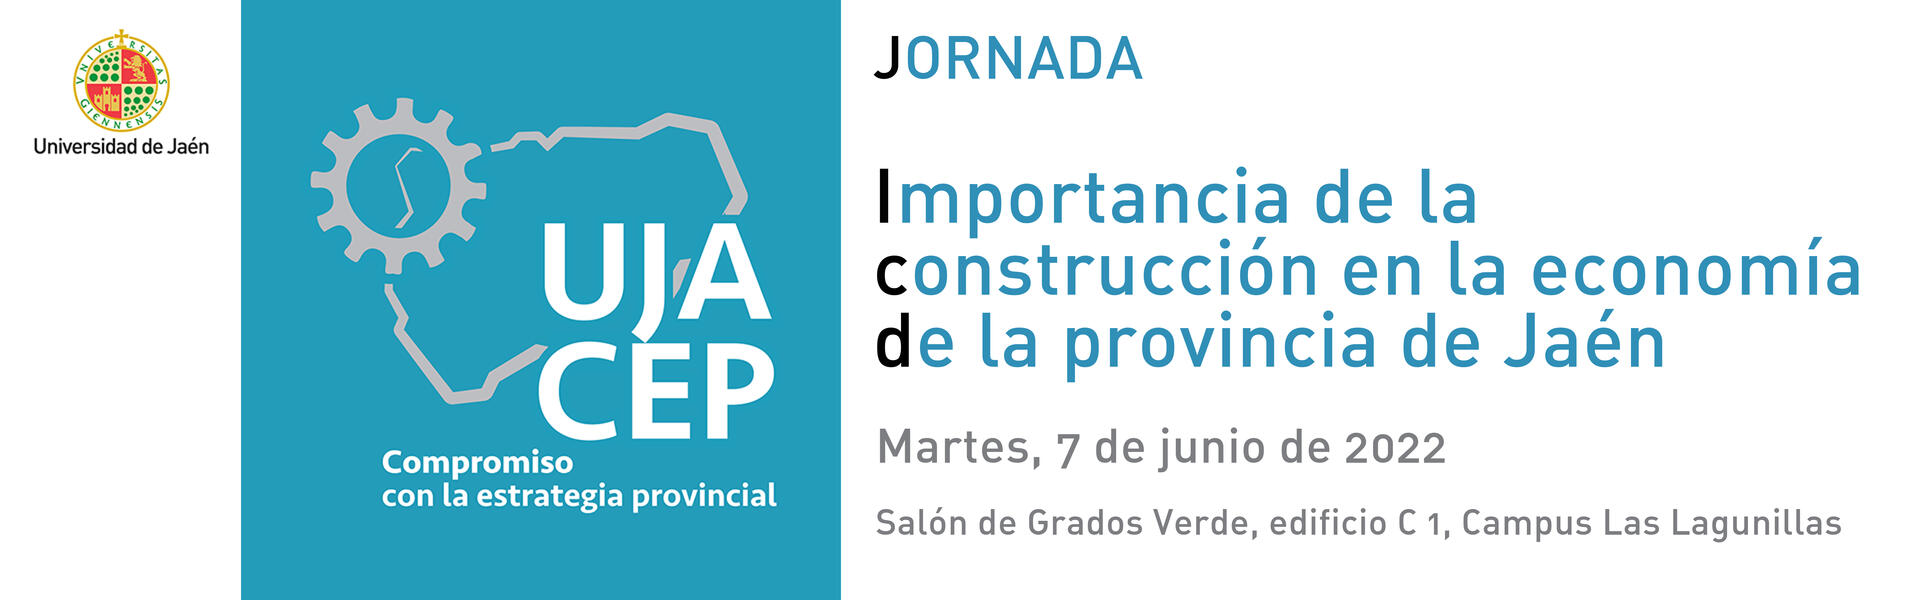  Jornada UJA-CEP 'Importancia de la construcción en la economía de la provincia de Jaén'